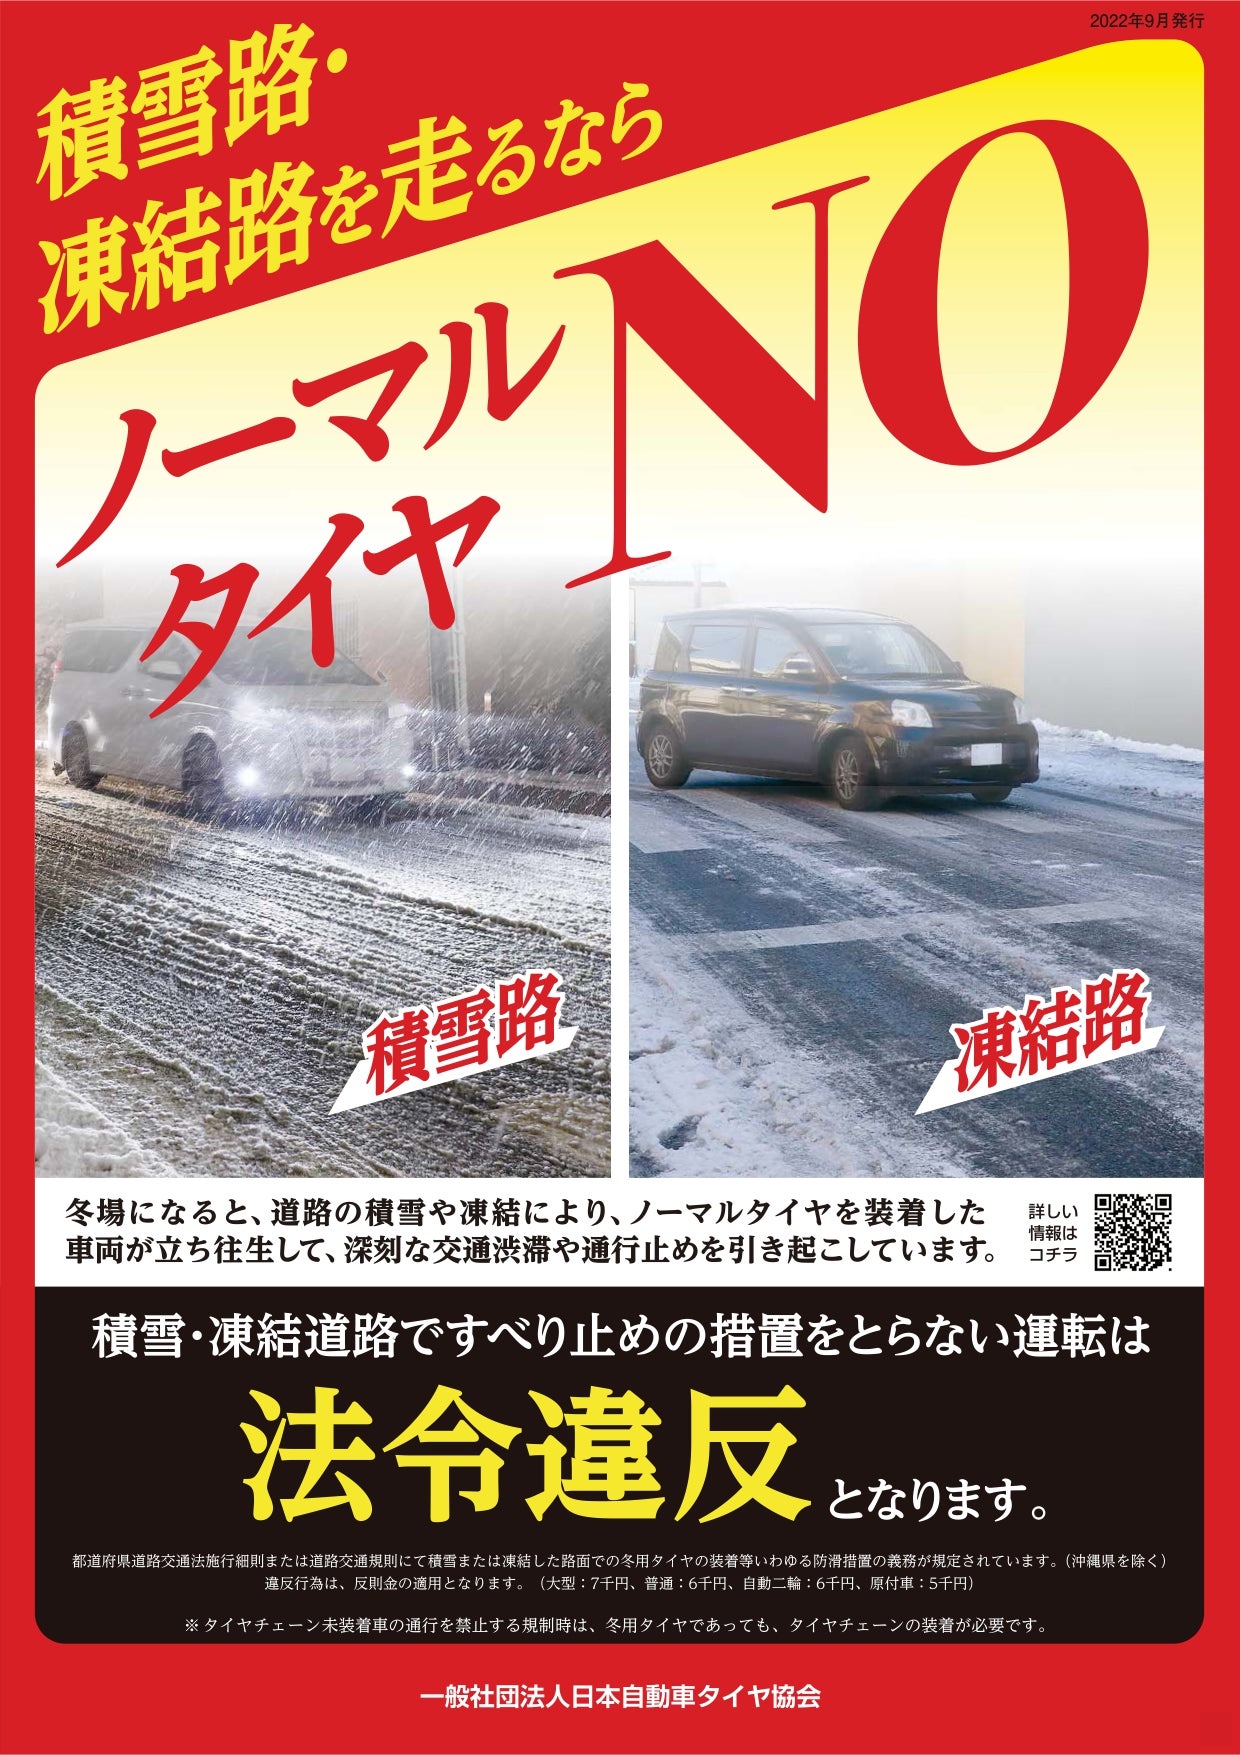 雪の降らない地域に向けて冬用タイヤの装着を呼びかける、日本自動車タイヤ協会のチラシ。